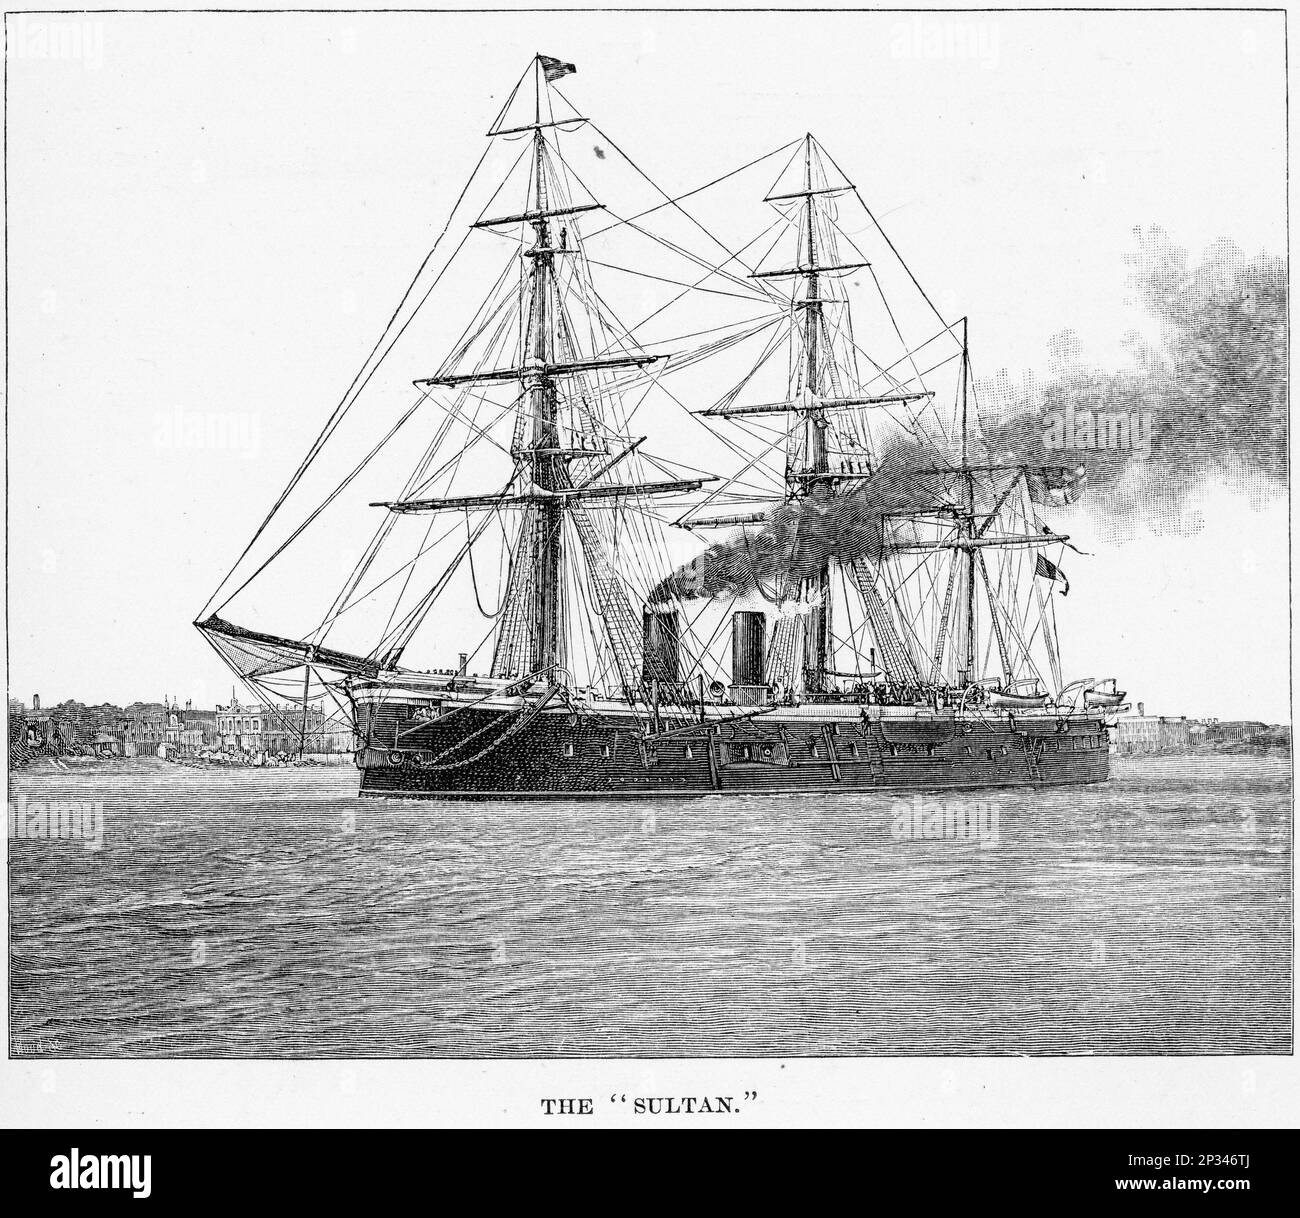 HMS Sultan, un ferro-mantello della Marina reale dell'epoca vittoriana, che portava il suo armamento principale in una batteria centrale. Fu chiamata per il sultano Abdulaziz dell'Impero Ottomano, che visitava l'Inghilterra quando fu deposta. Foto Stock